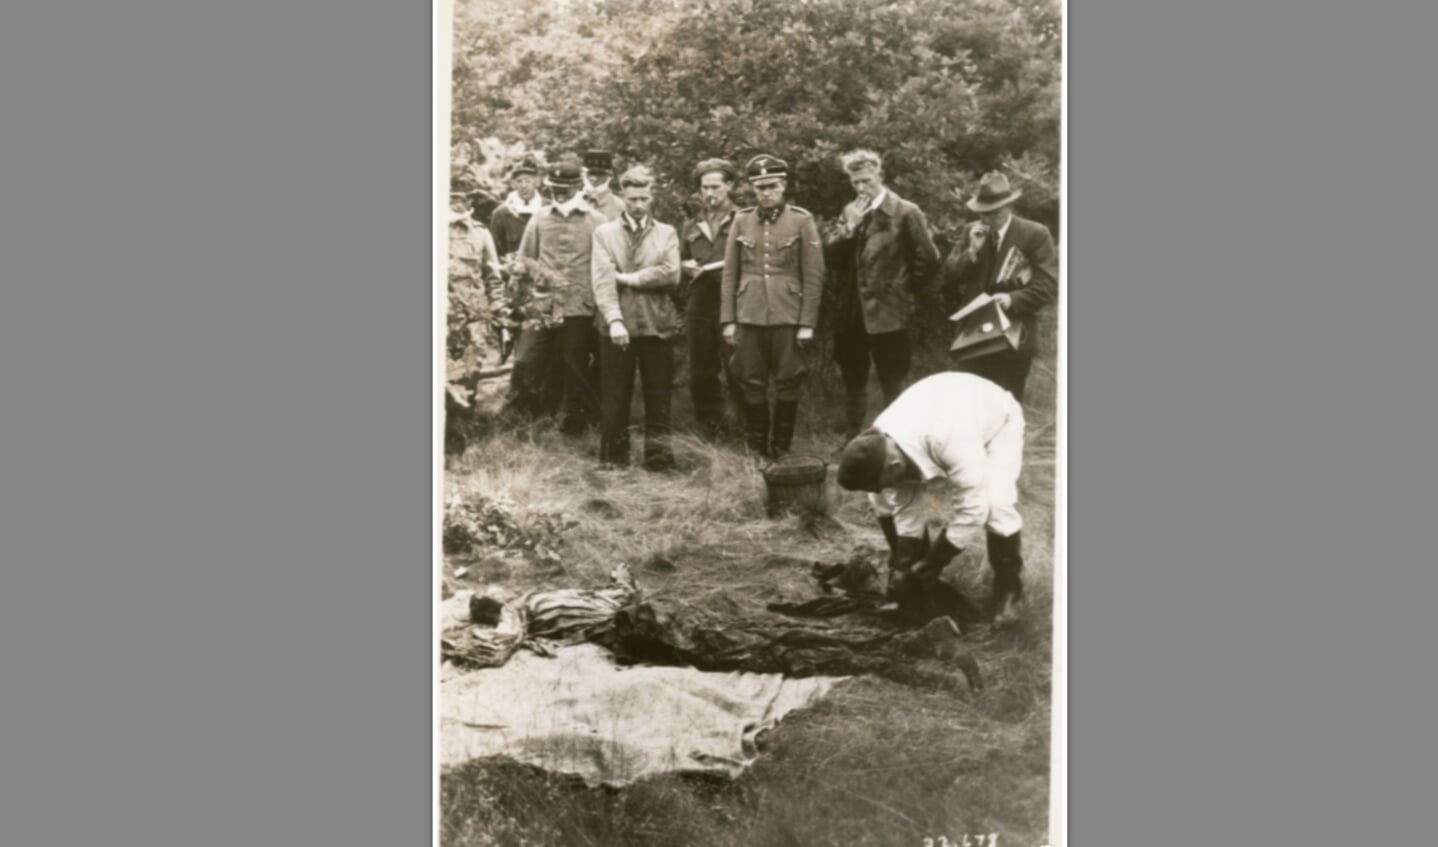 Foto 4: In kamp Amersfoort zijn tijdens de oorlog naar schatting 350 gevangenen geëxecuteerd. Kort na de bevrijding worden hun lichamen opgegraven om te worden herbegraven.